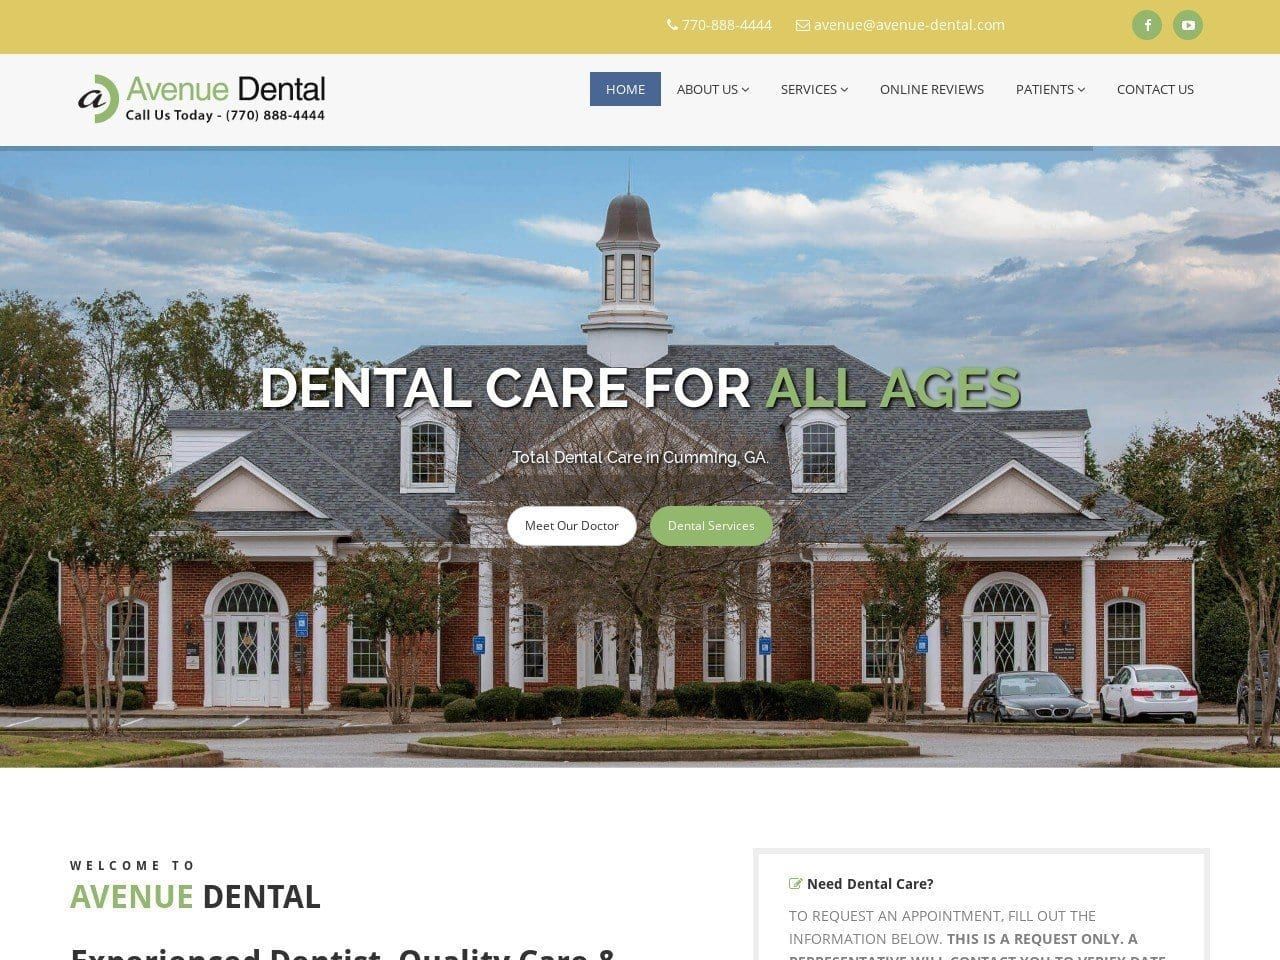 Avenue Dental Website Screenshot from avenue-dental.com